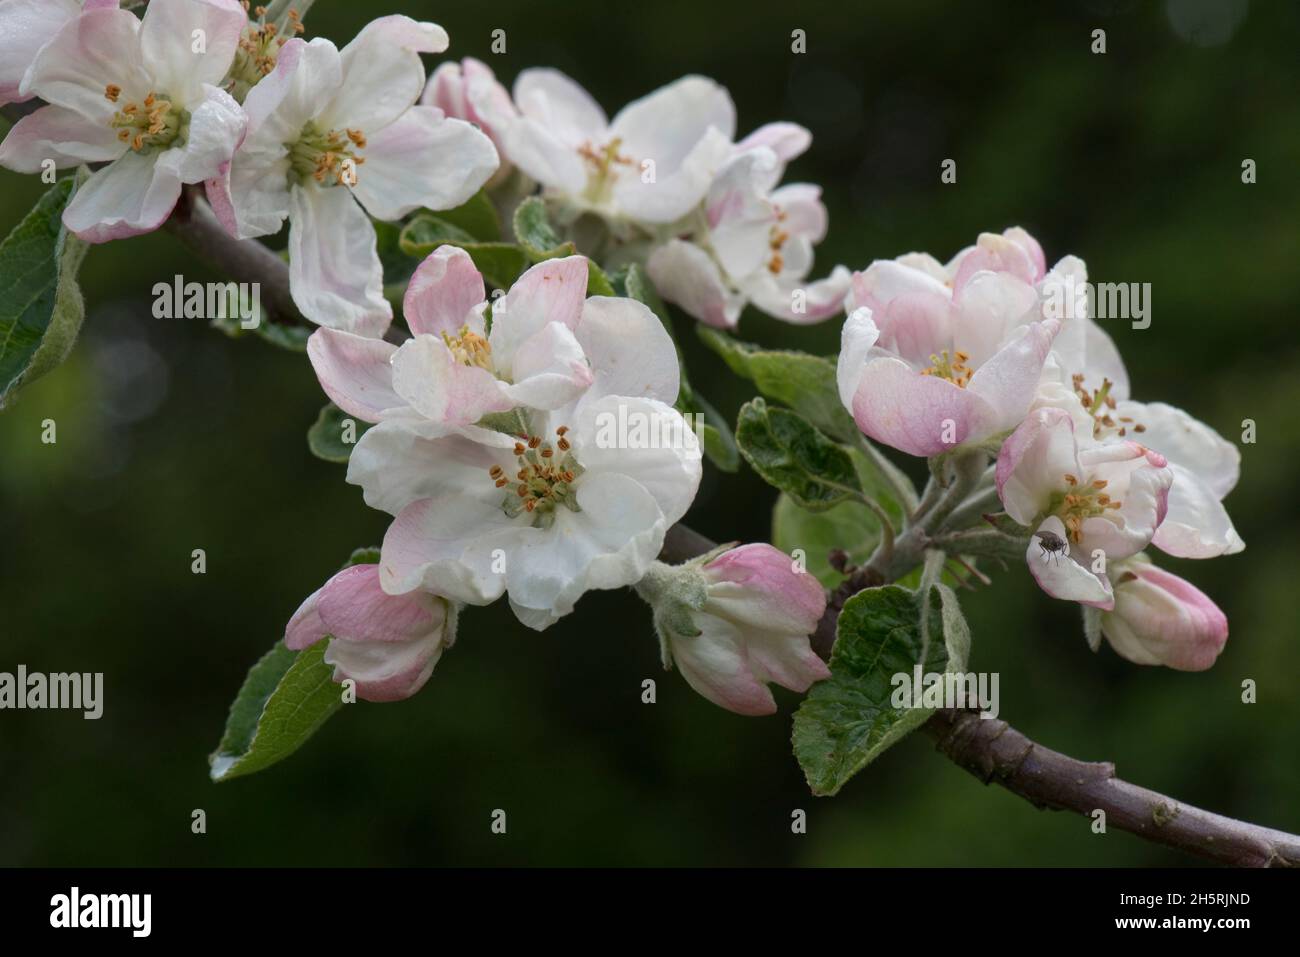 Fleurs de roi et boutons de fleur ouvrant sur une variété de branche de pomme Bramley au printemps, cette variété est cultivée pour la cuisine, Berkshire, mai Banque D'Images